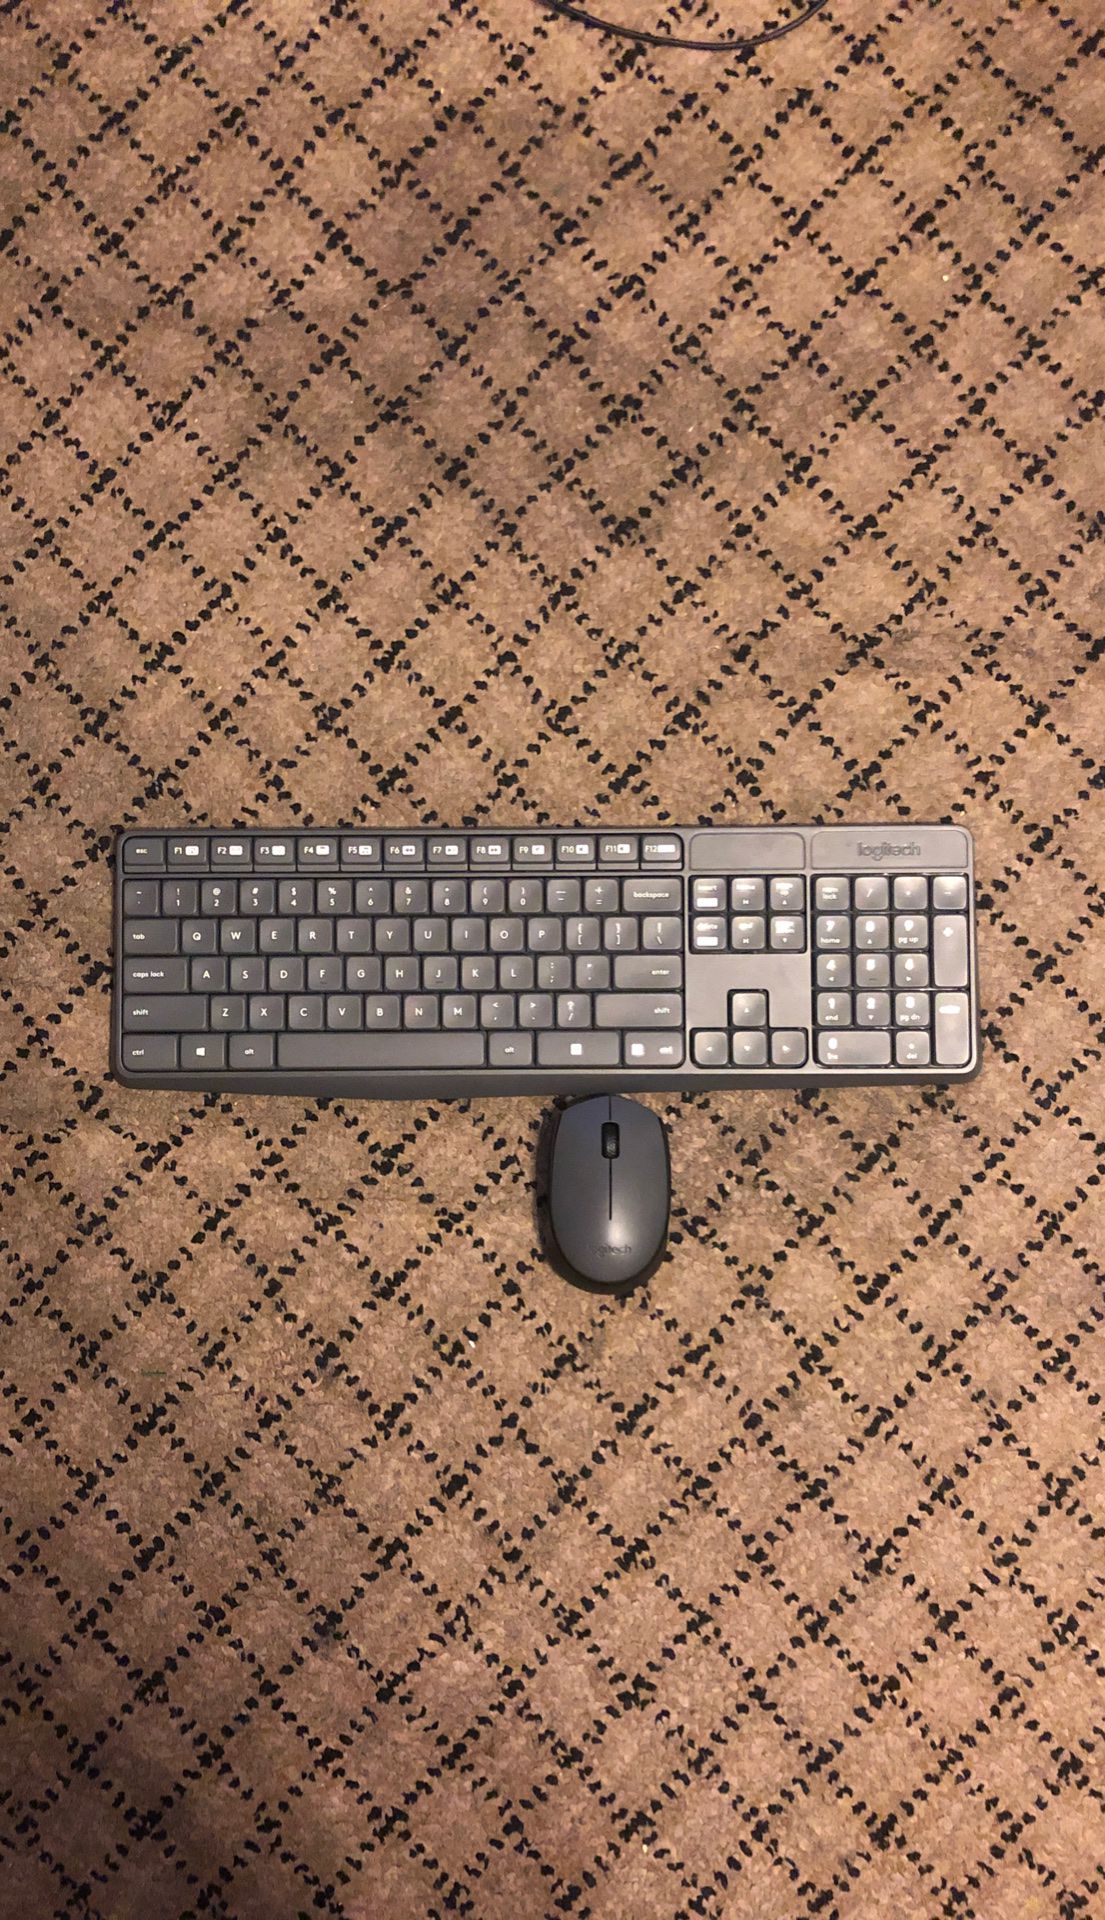 Logitech wireless mouse and keyboard